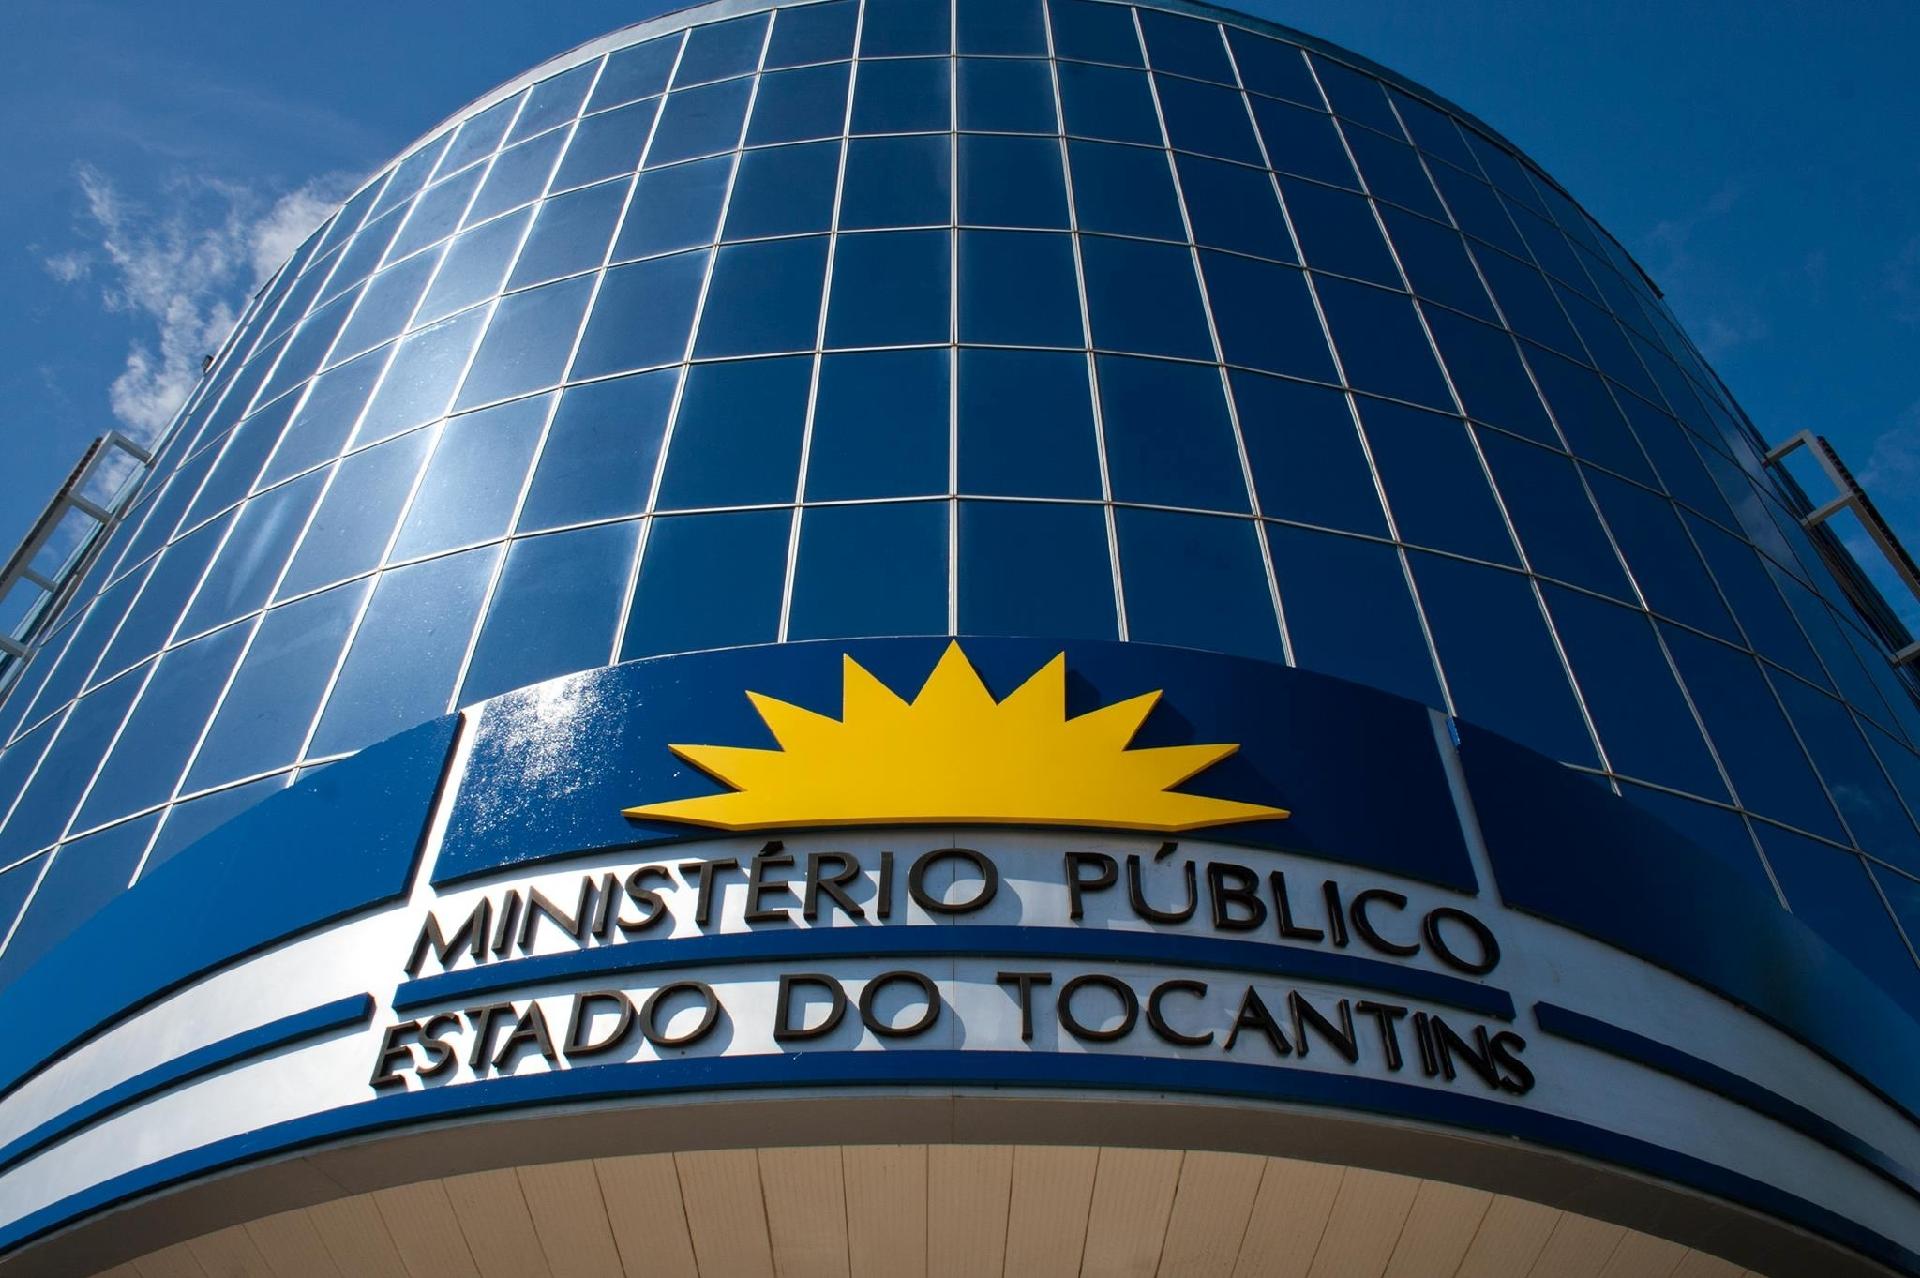 Ministério Público Eleitoral expede recomendação aos partidos políticos de Miracema, Lajeado e Tocantínia